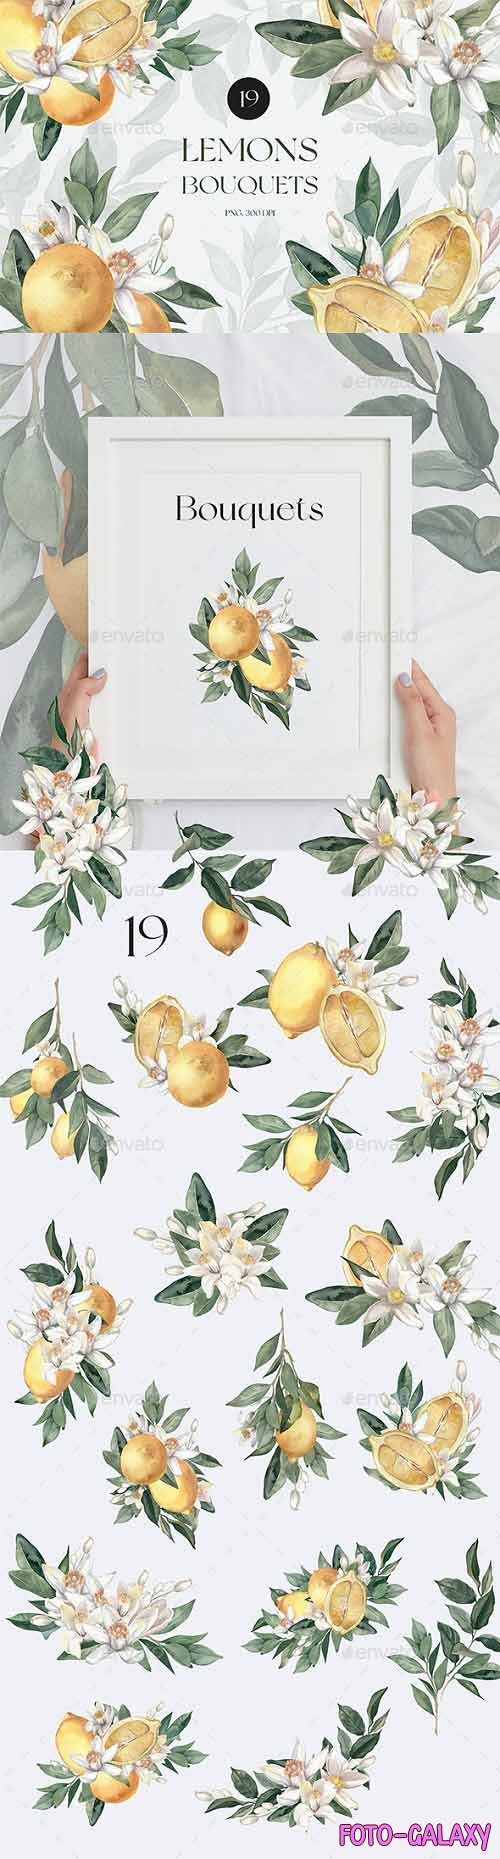 Watercolor Lemon Bouquets - 33231124